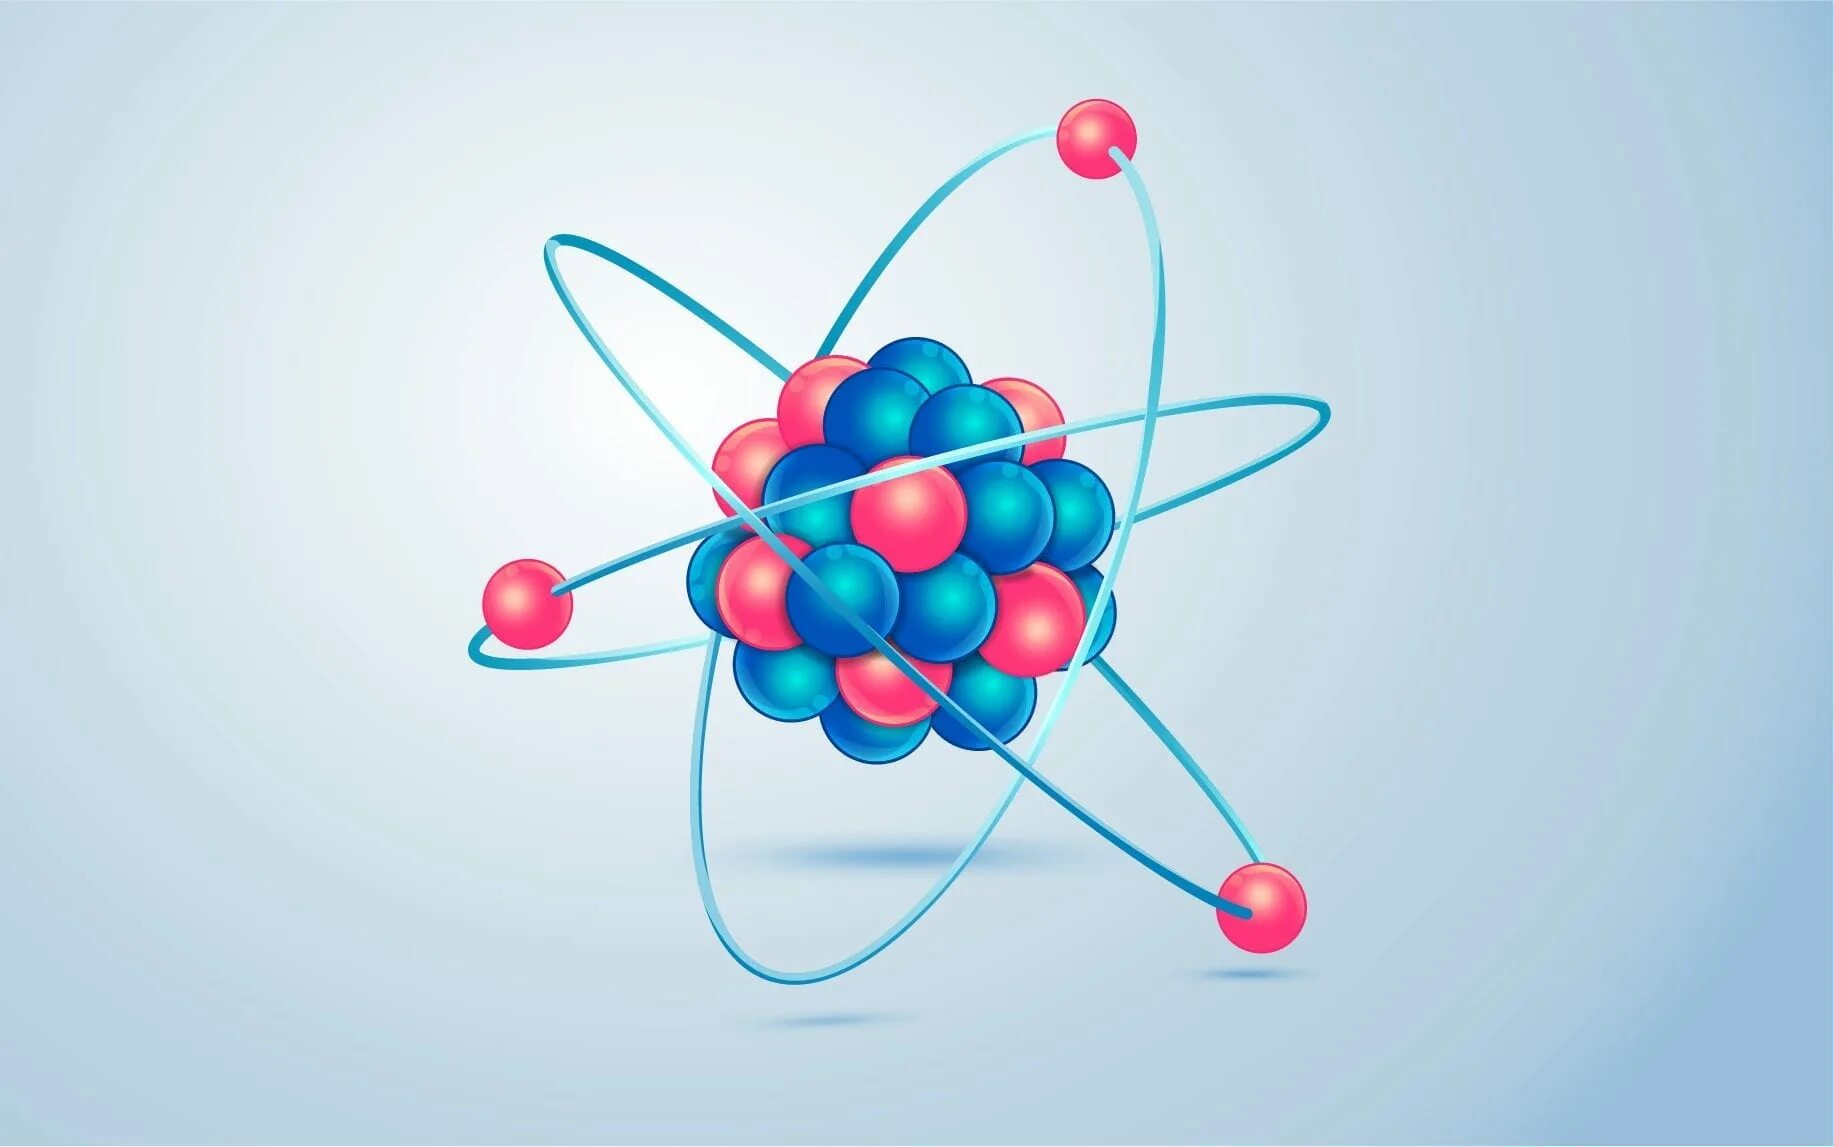 Атом длс. Структура атома. Атом инфографика. Модель атома. Атом.